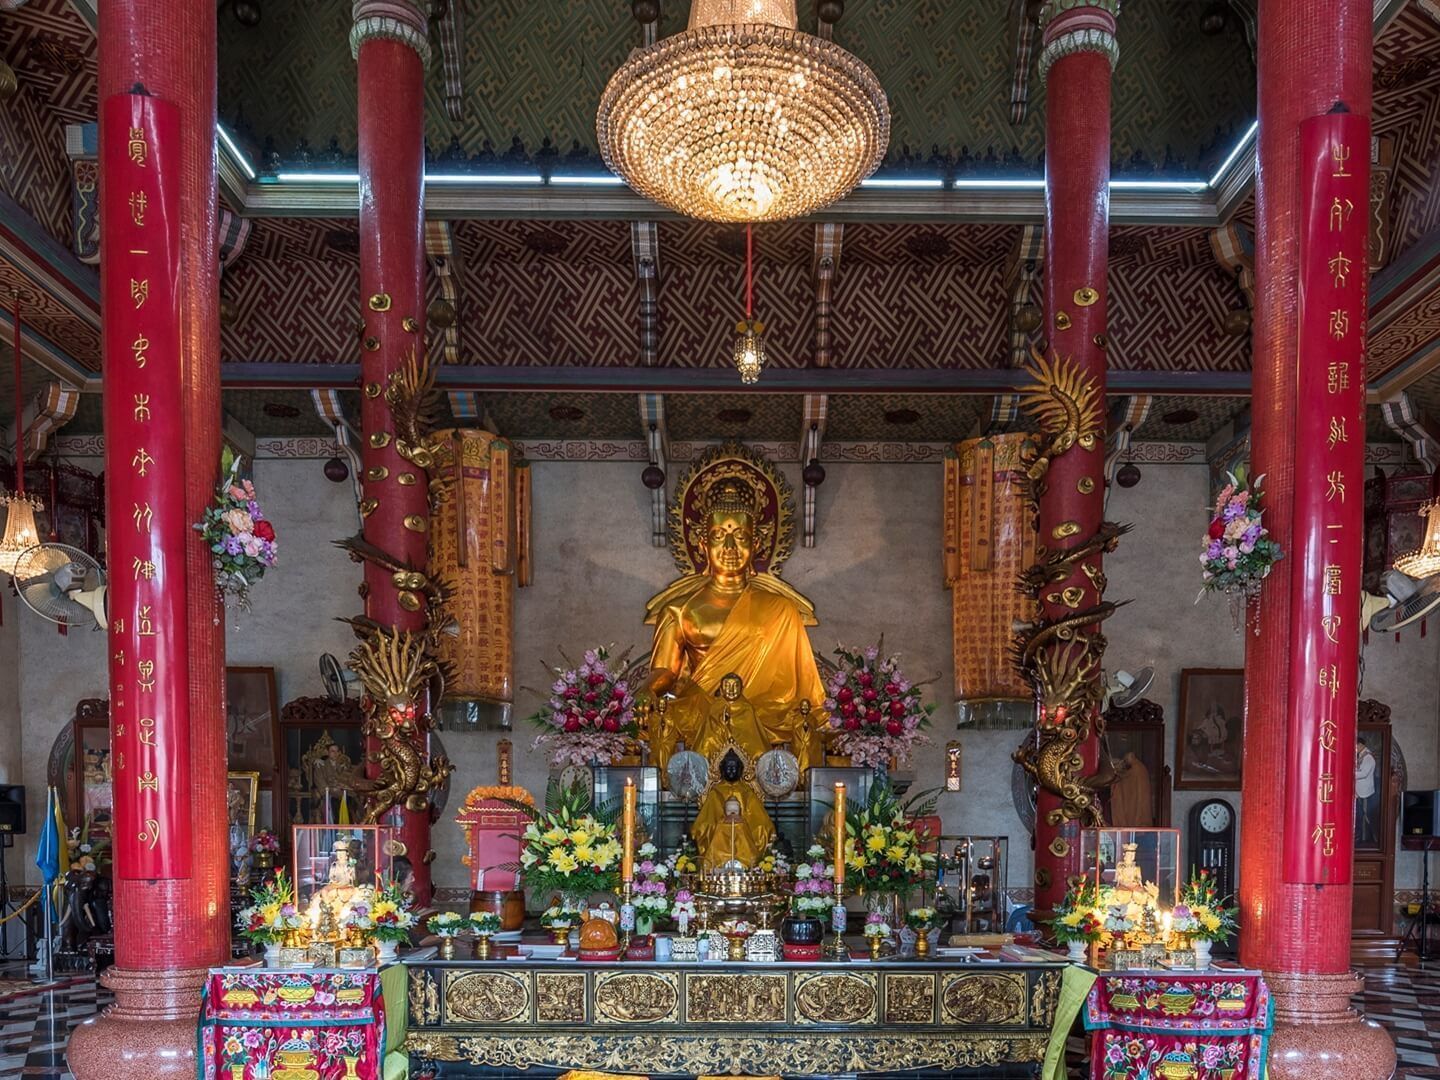 Interior of Wat Pho Man Khunaram near Chatrium Grand Bangkok